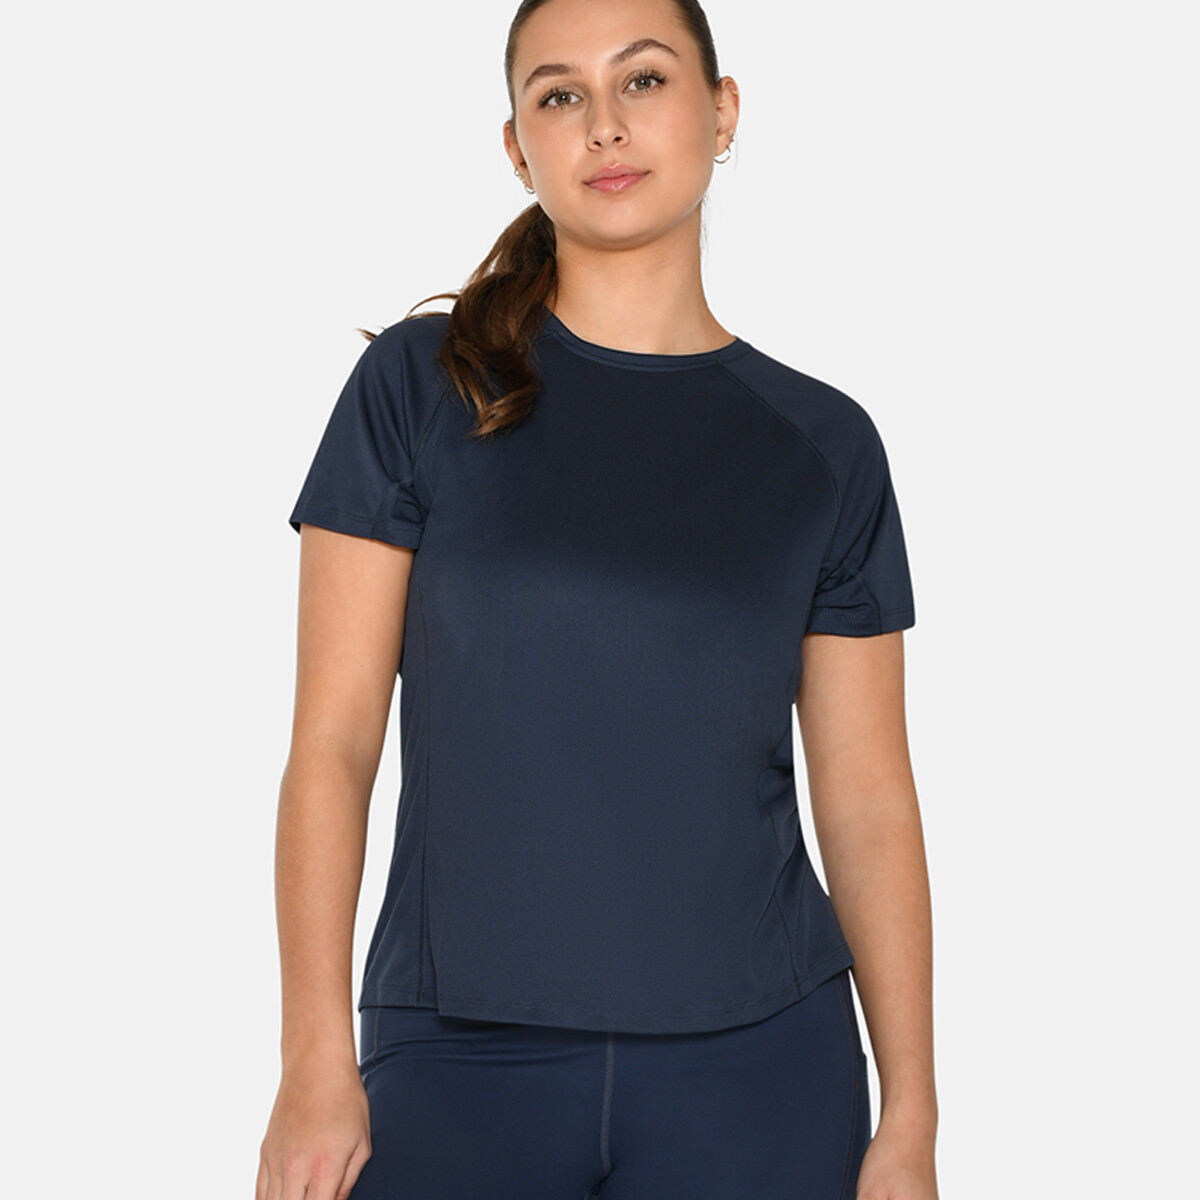 Se Zebdia Women Sports T-shirt, Farve: Blå, Størrelse: L, Dame hos Netlingeri.dk